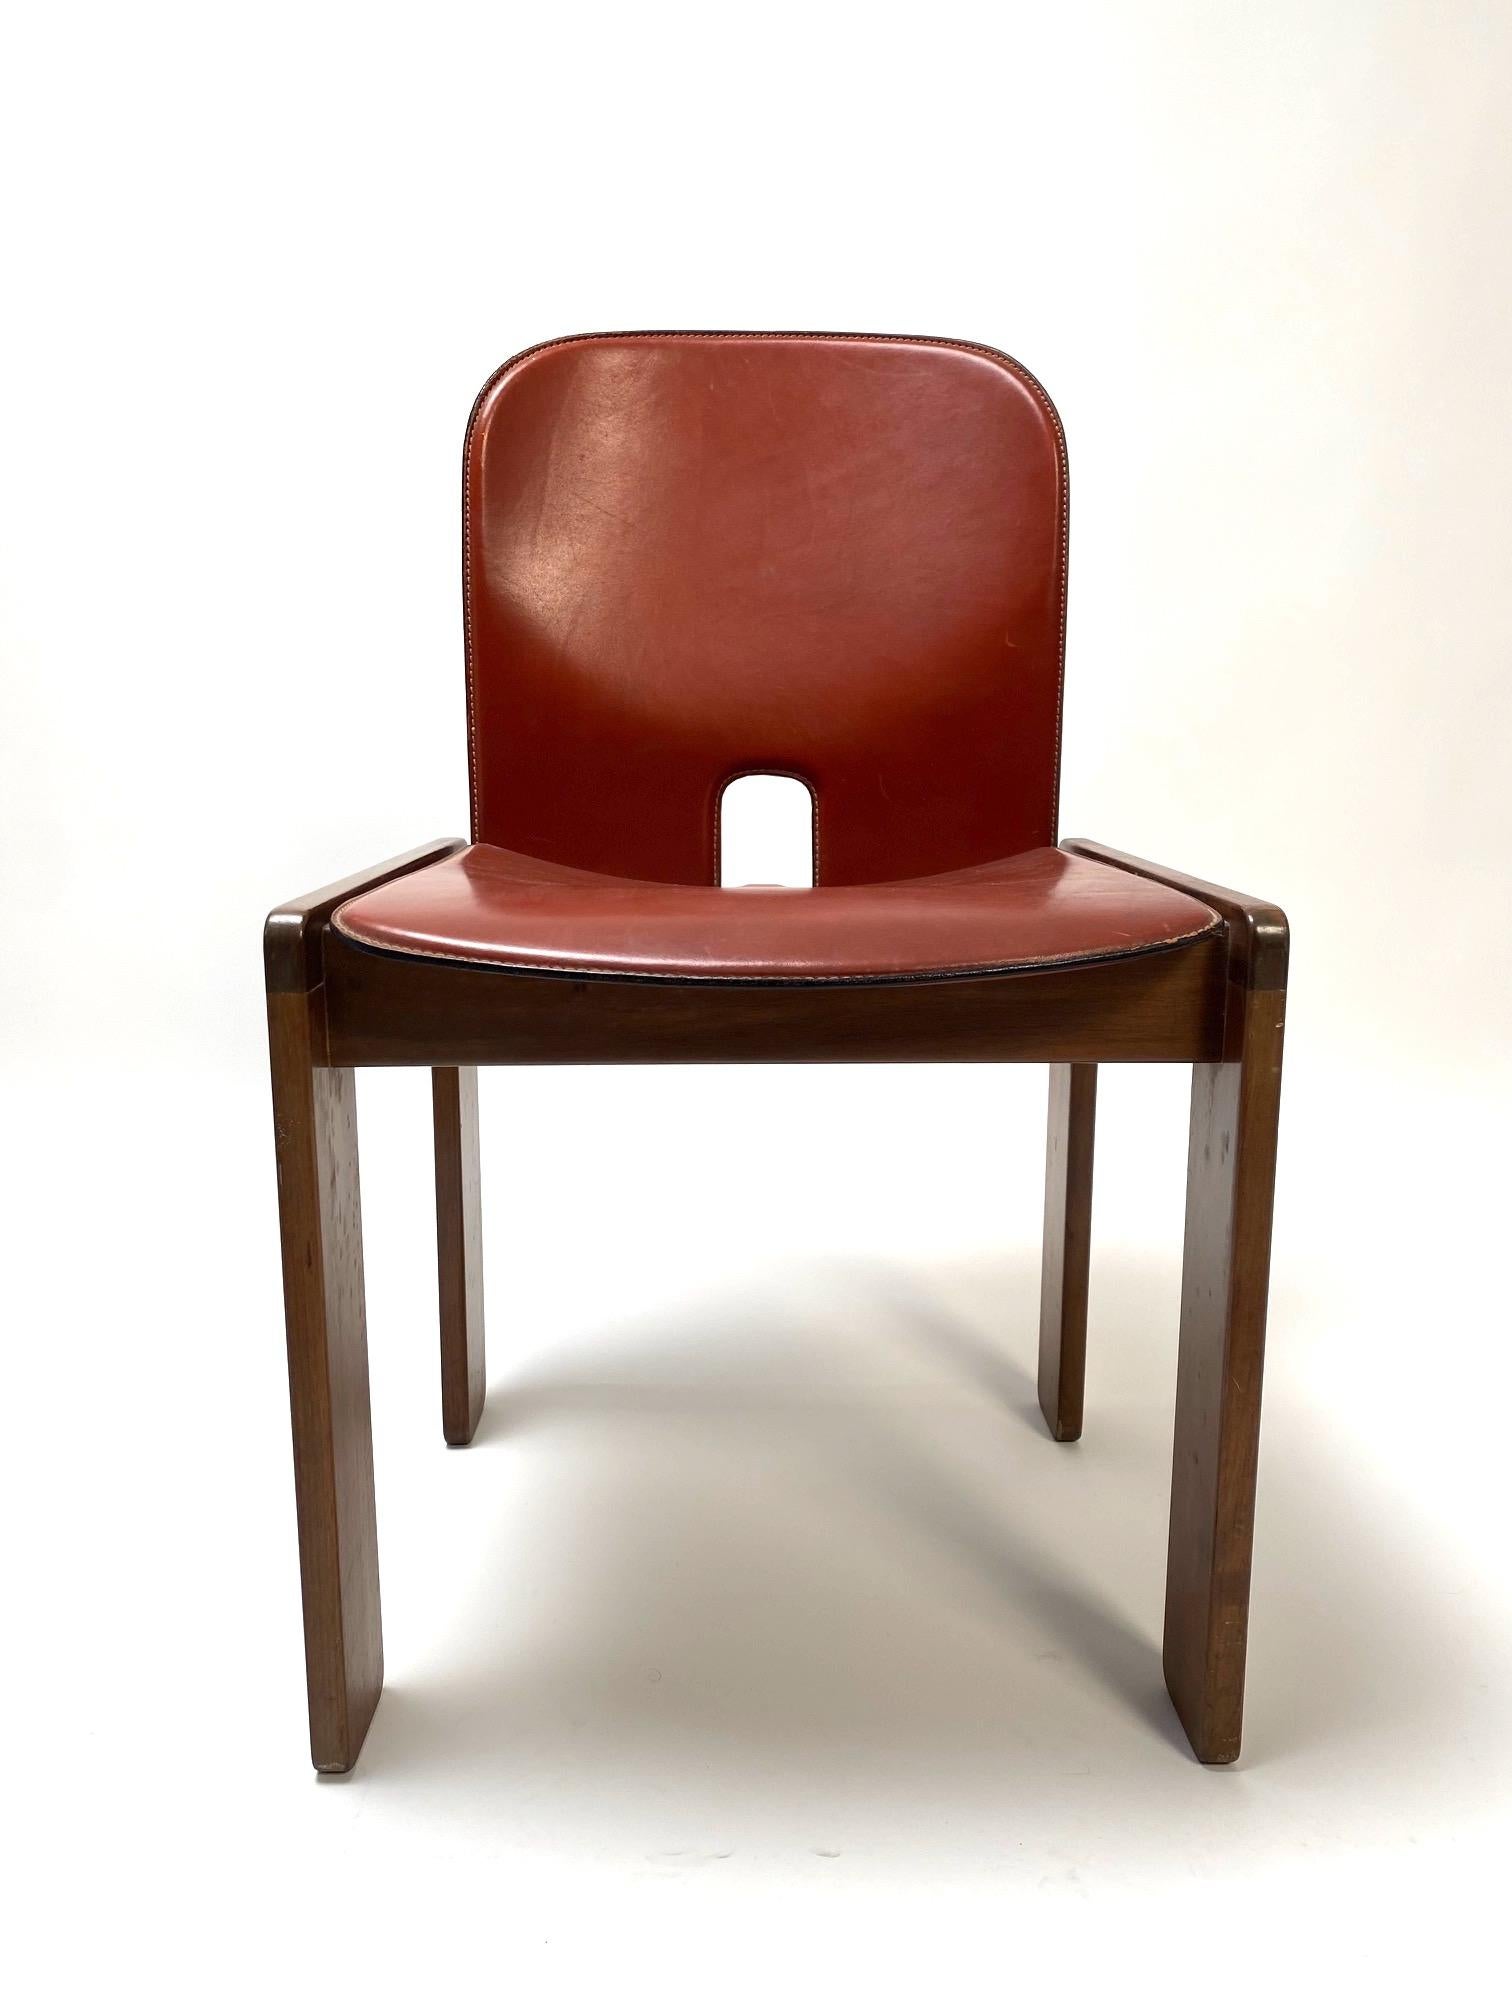 Satz von 6 Lederstühlen „121“ von Tobia Scarpa für Cassina, Italien, 1967

Der Stuhl, der inzwischen zu einer Ikone des italienischen Stils geworden ist, zeichnet sich durch die für Scarpa typische doppelte Gestellstruktur mit der charakteristischen